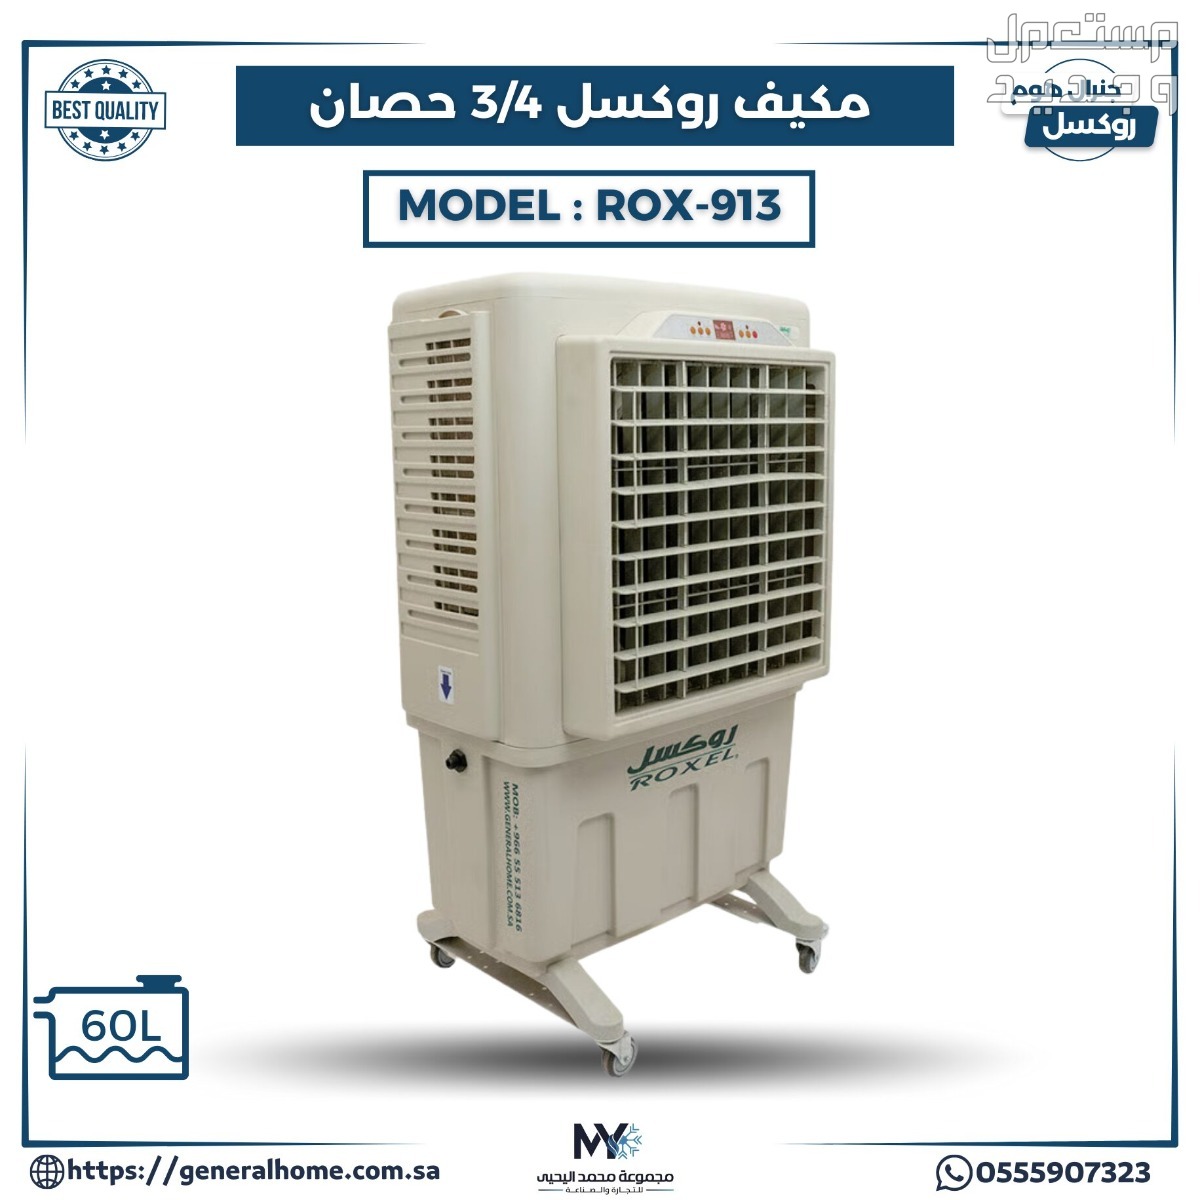 عروض اليحيى للمكيفات بالأنواع والمواصفات والصور والأسعار في ليبيا مكيف روكسل 3/4 حصان موديل ROX-913